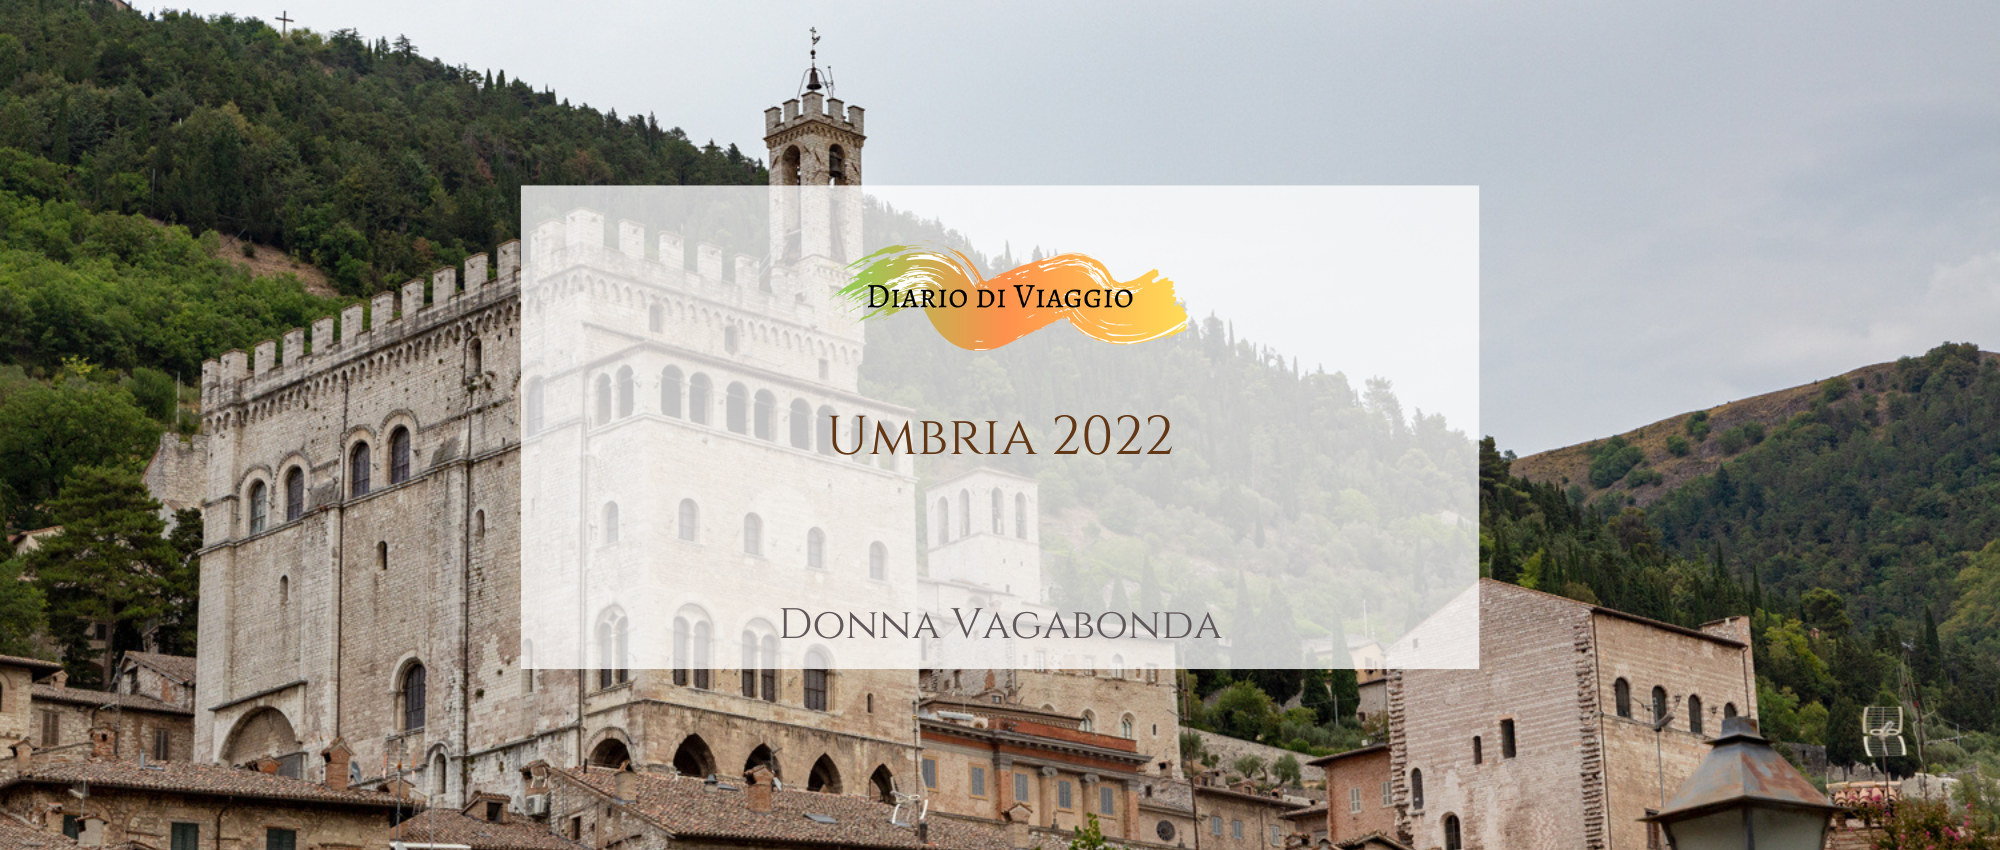 Diario di viaggio: Umbria 2022 - Giorno 1 - Donna Vagabonda